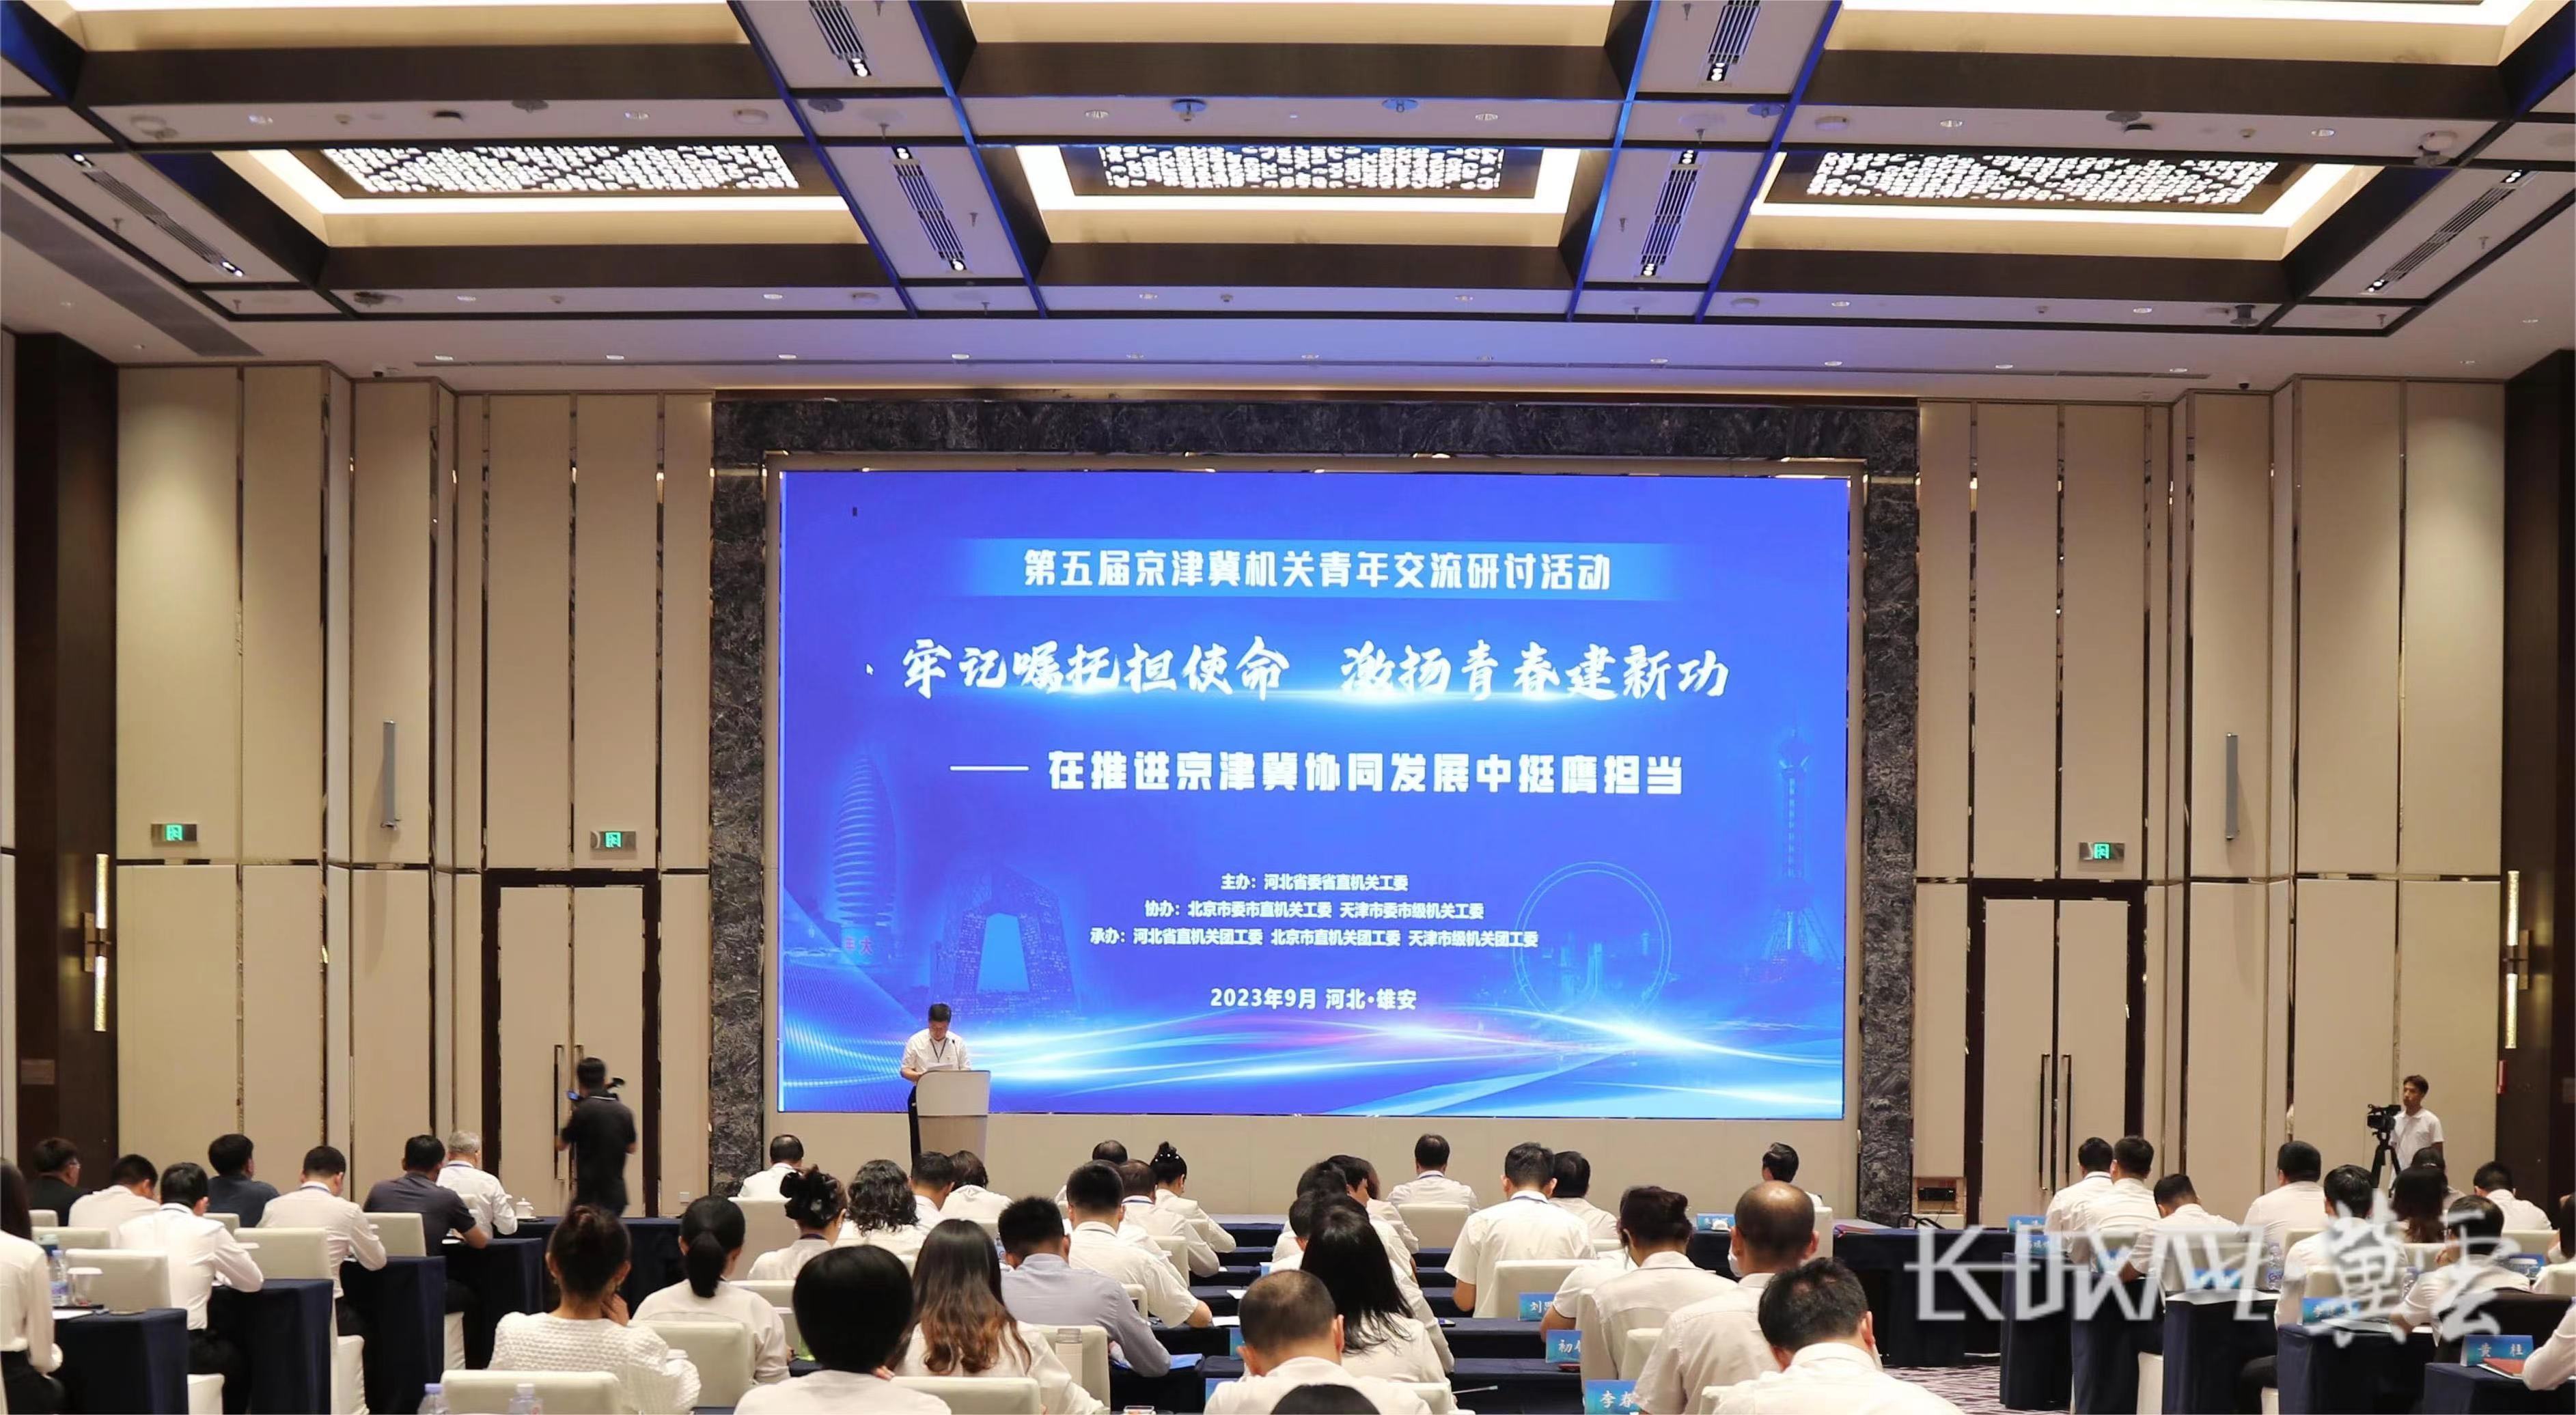 第五屆京津冀機關青年交流研討活動在雄安新區舉辦